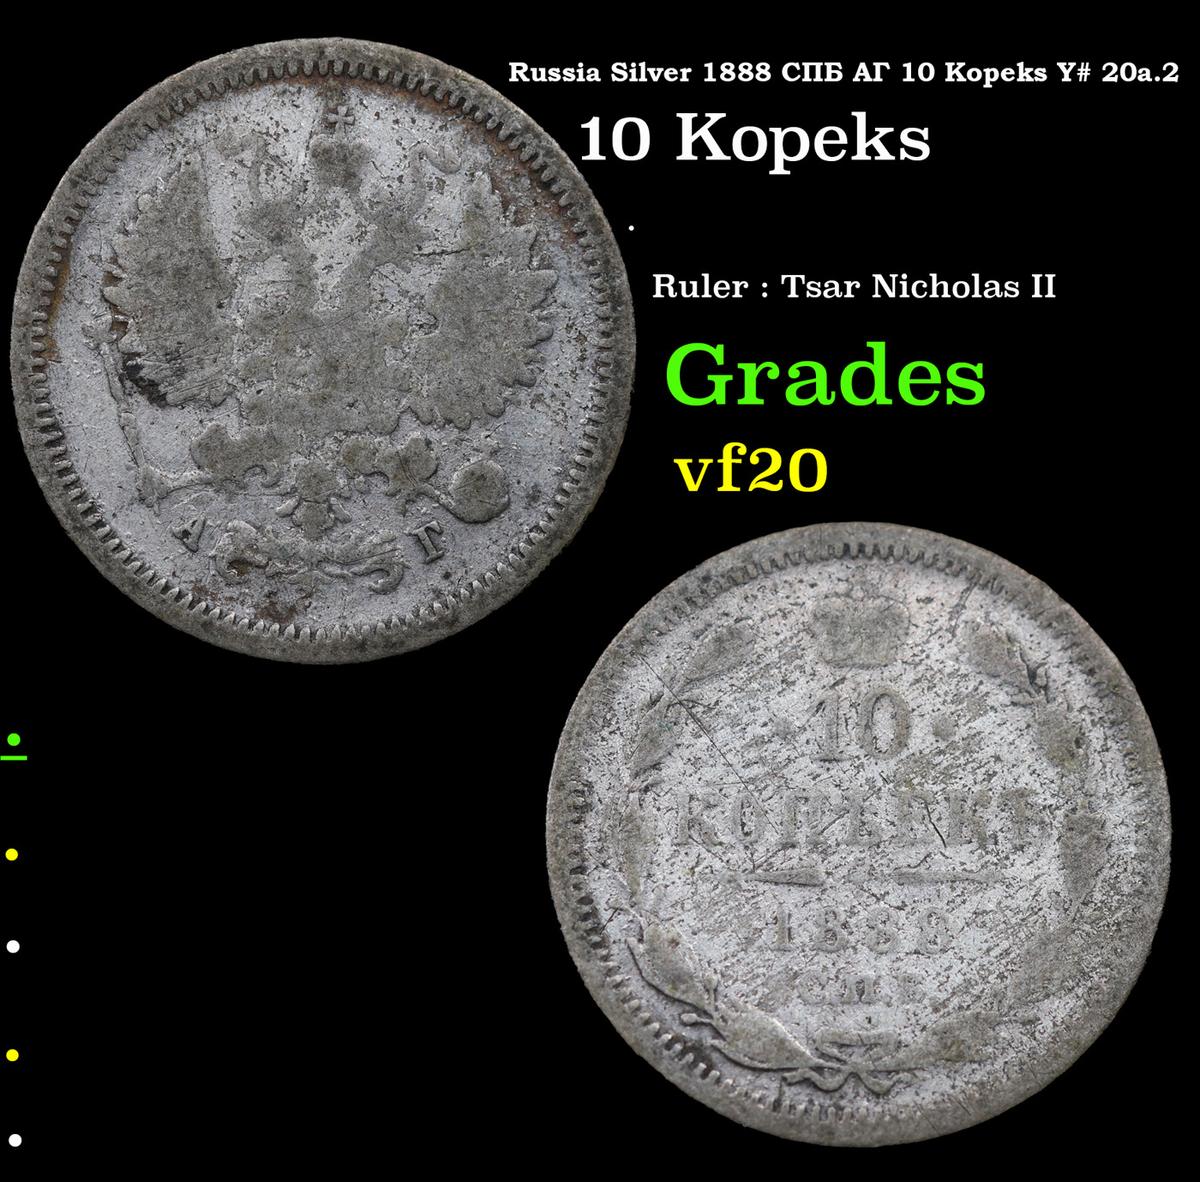 Russia Silver 1888 Cn6 Ar 10 Kopeks Y# 20a.2 Grades vf, very fine